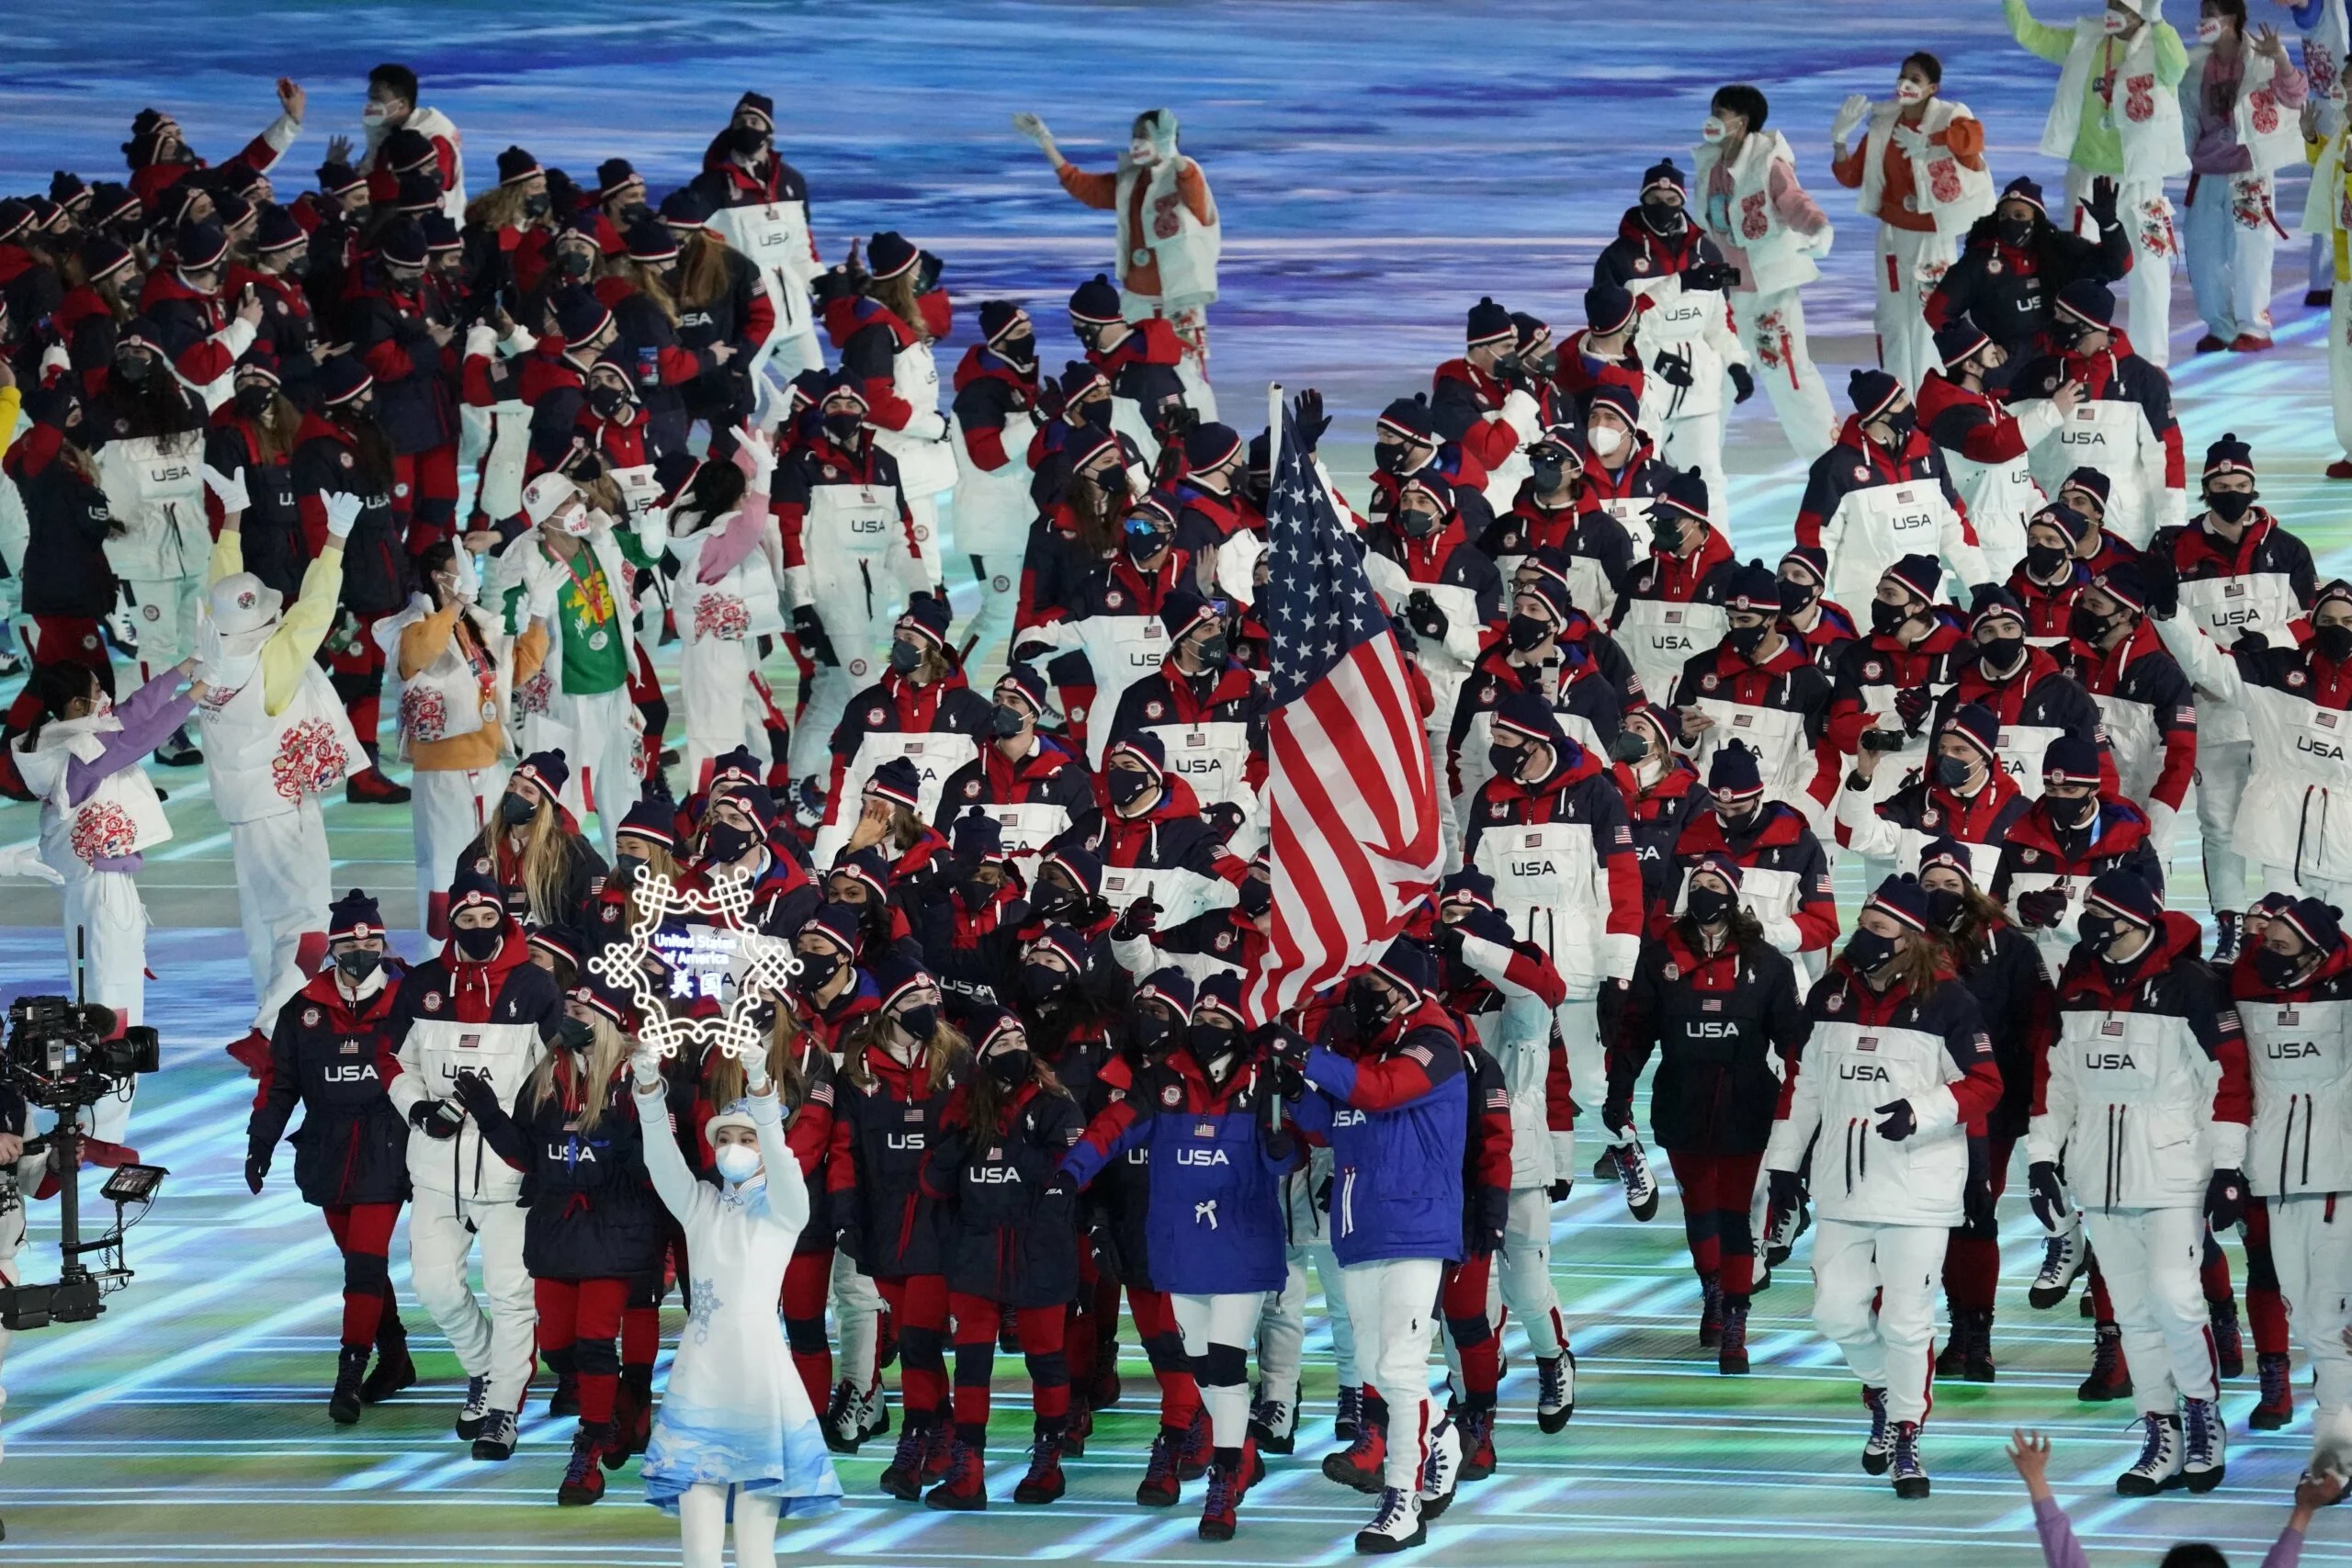 חברי המשלחת האמריקנית לאולימפיאדת החורף בבייג'ינג, המונה 226 ספורטאים